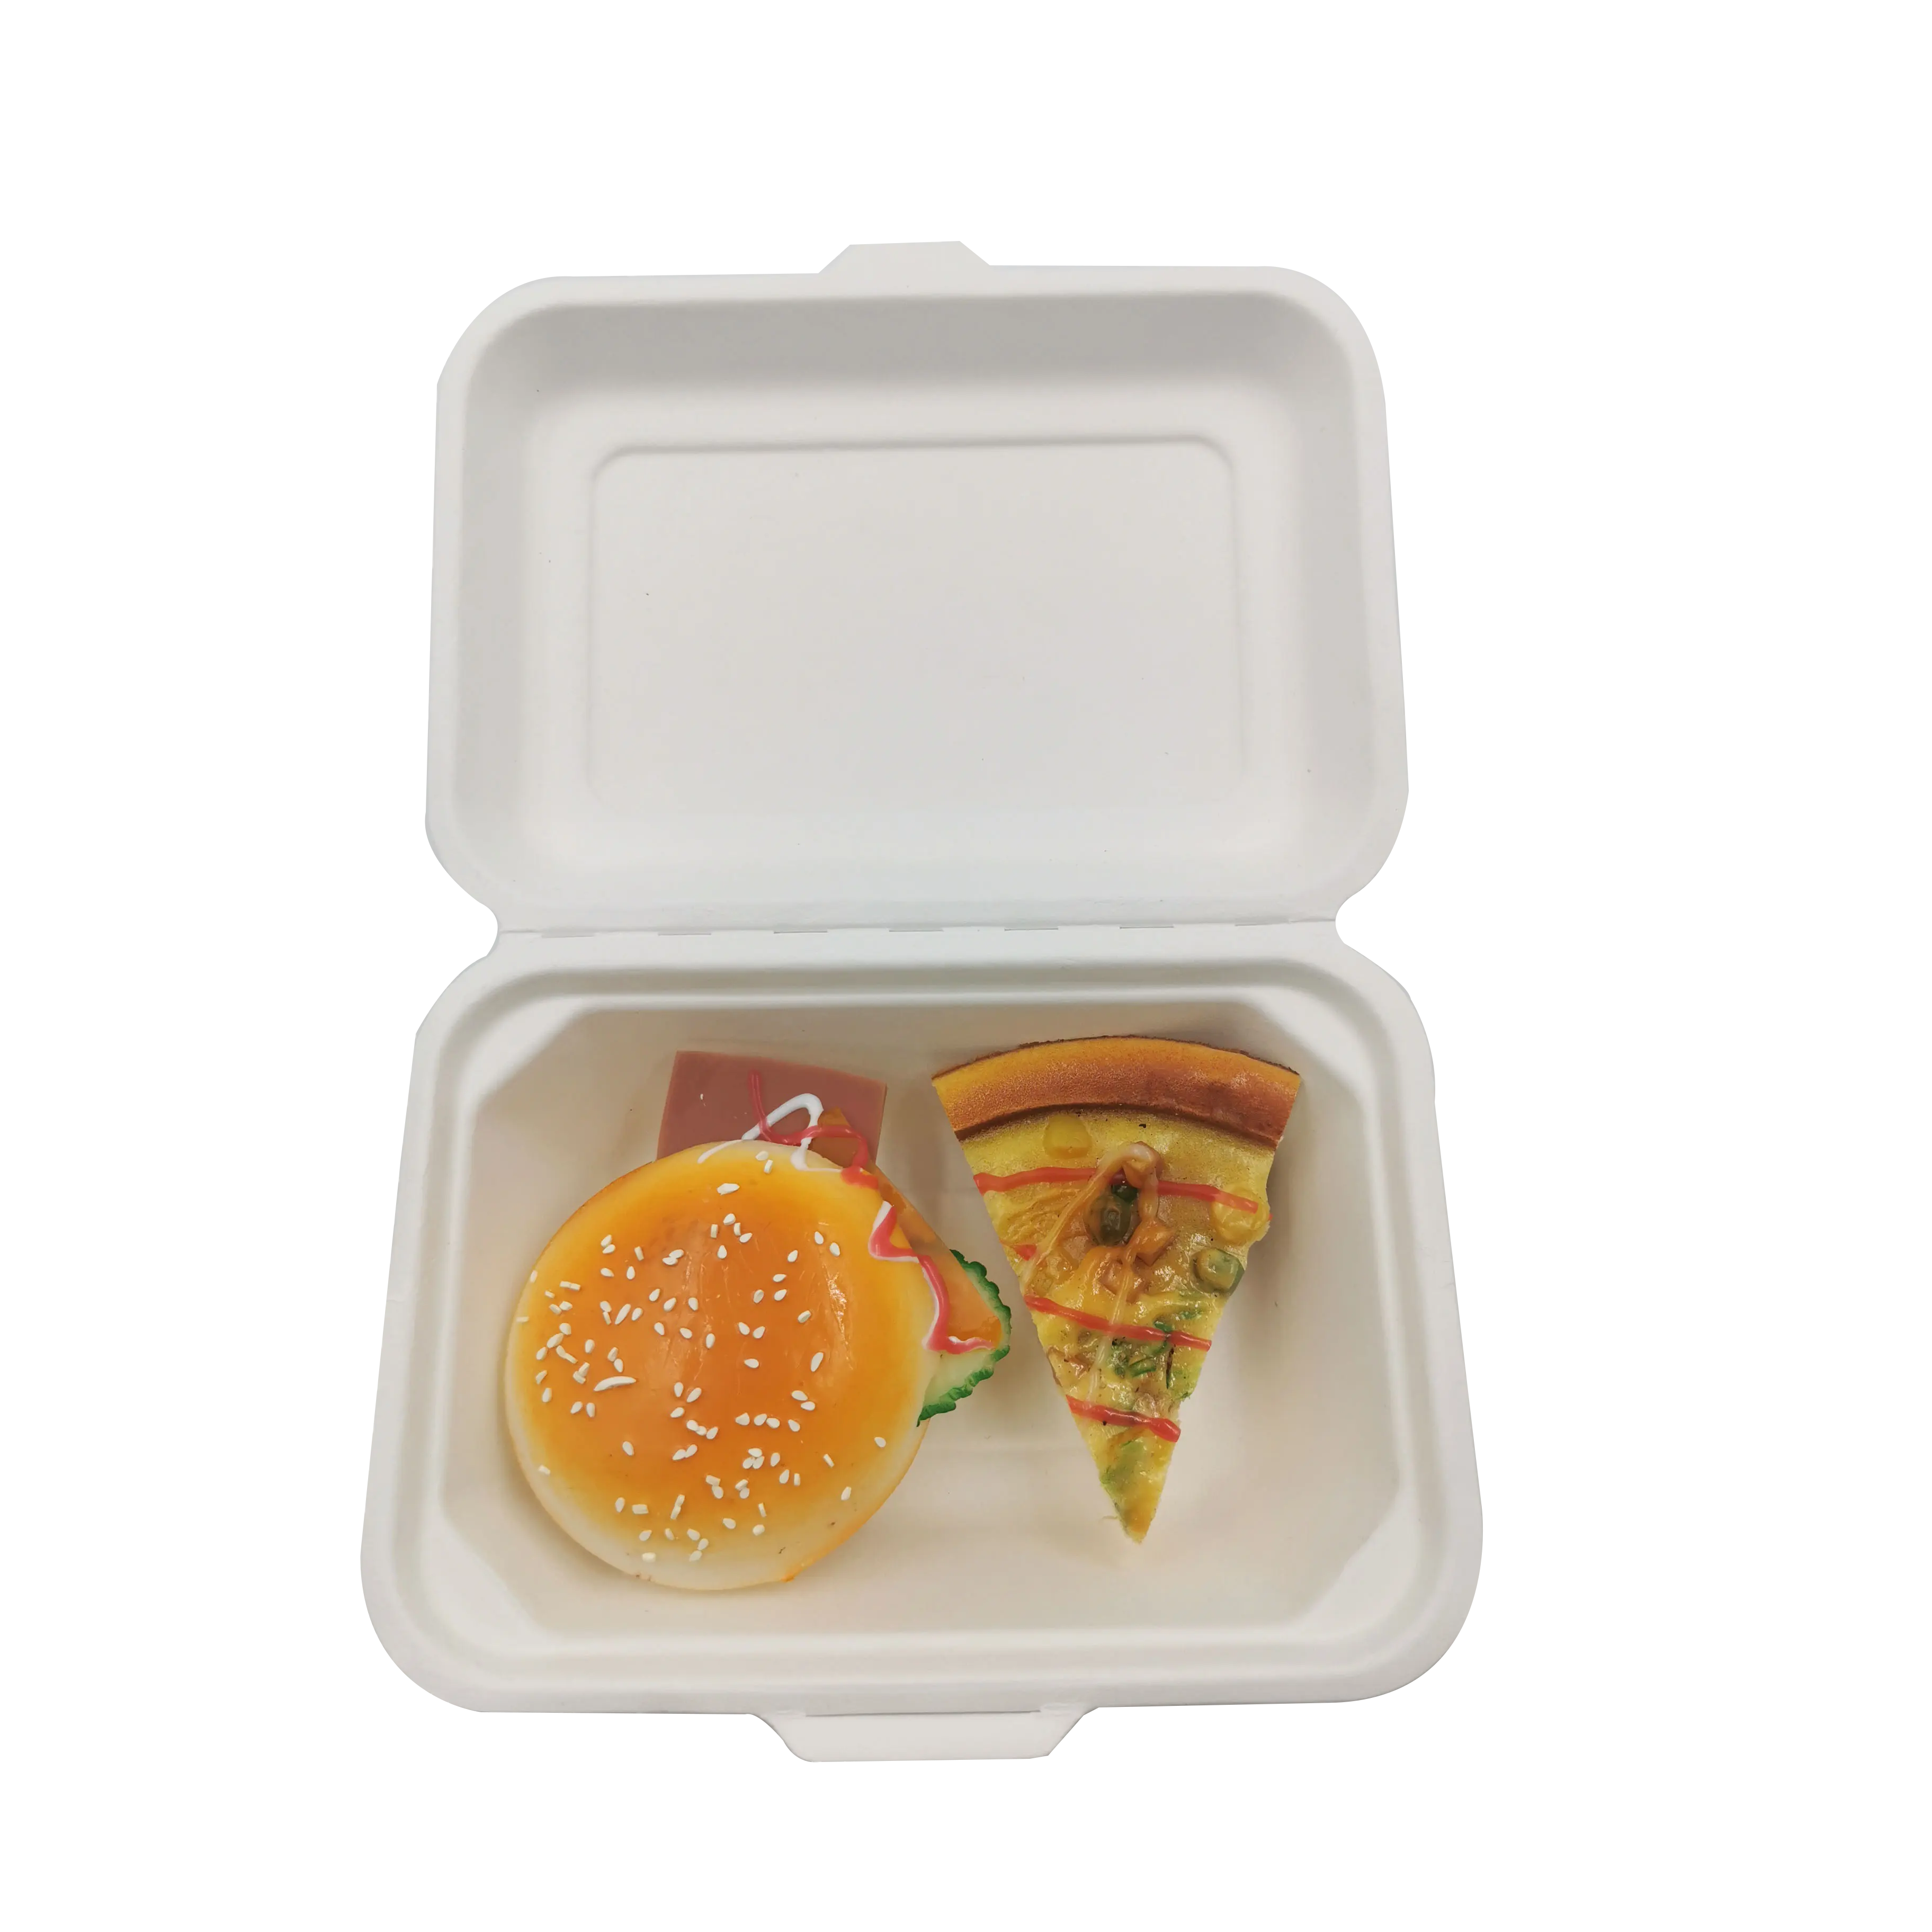 무료 샘플 싼 600ml 처분할 수 있는 Eco 친절한 간이 식품 콘테이너 포장 Microwavable 조가비 점심 콘테이너 상자